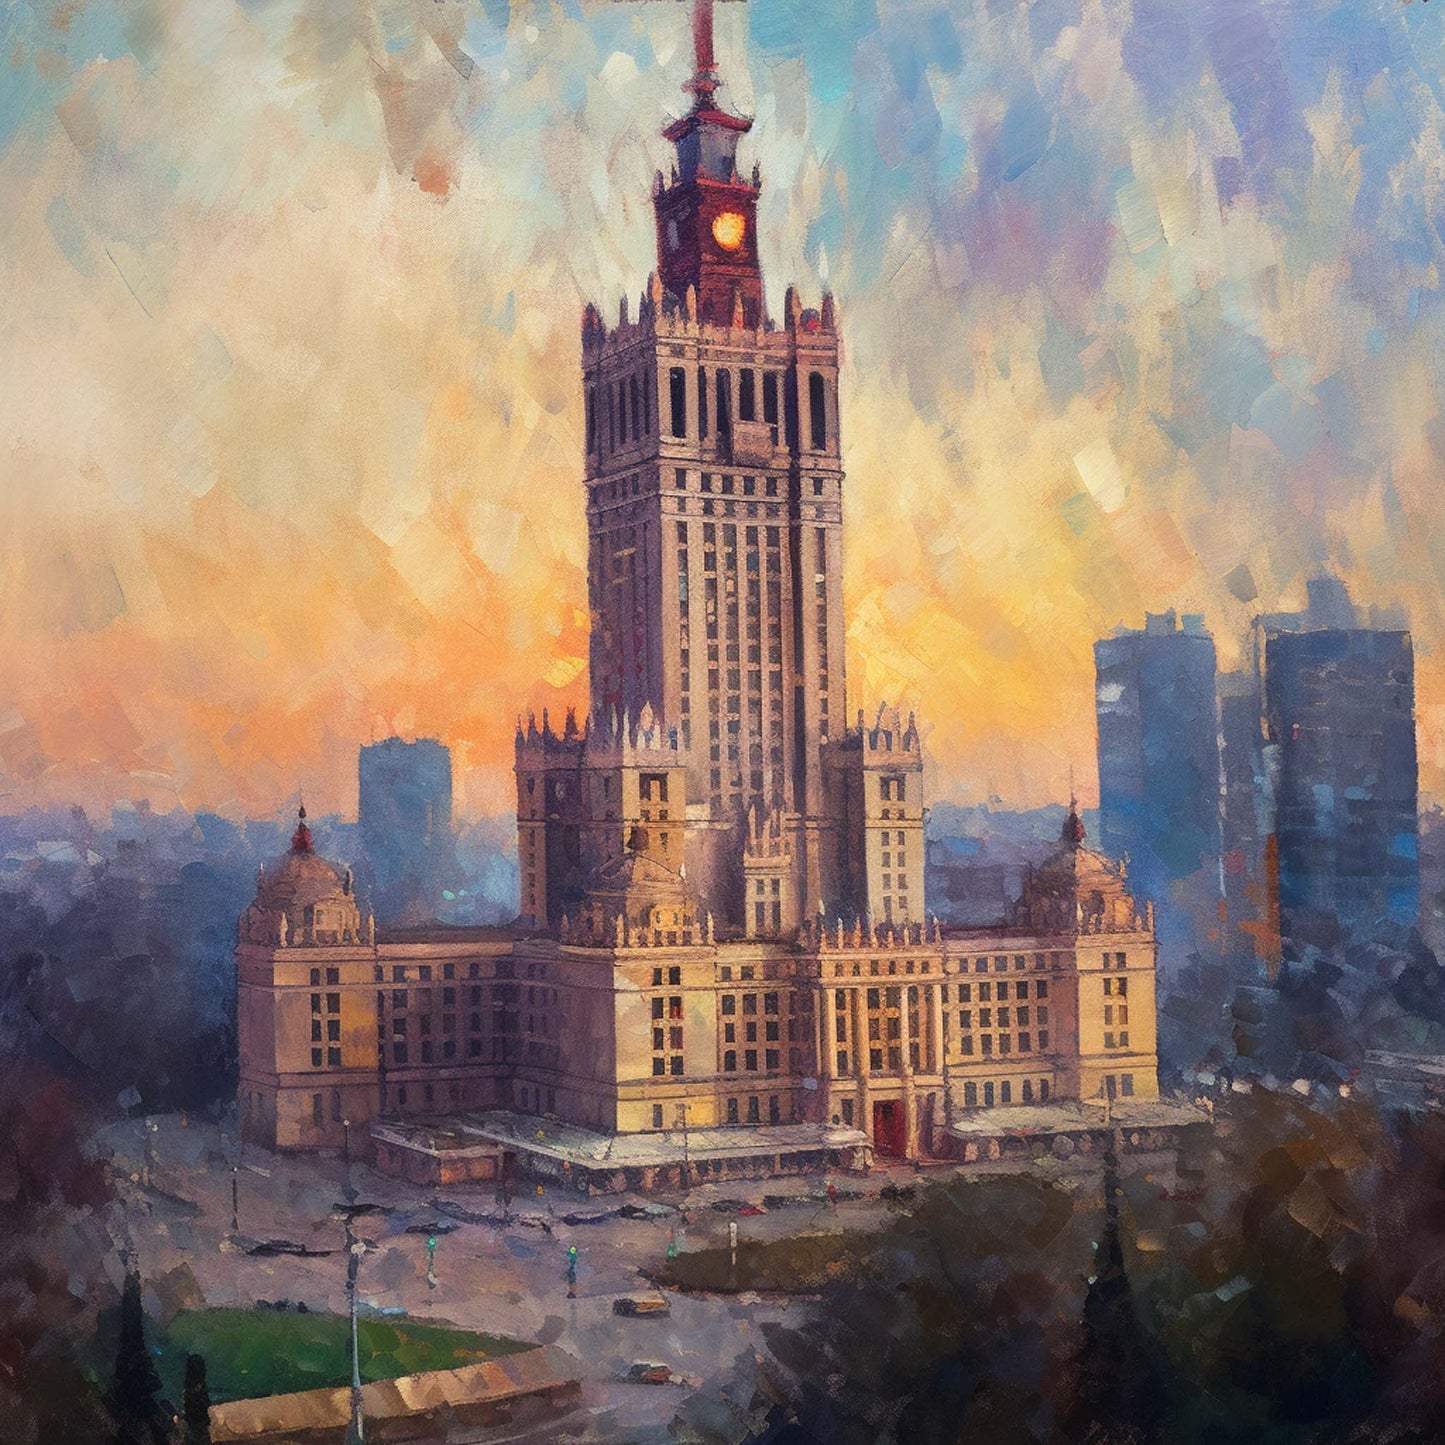 Warschau Kulturpalast - Wandbild in der Stilrichtung des Impressionismus